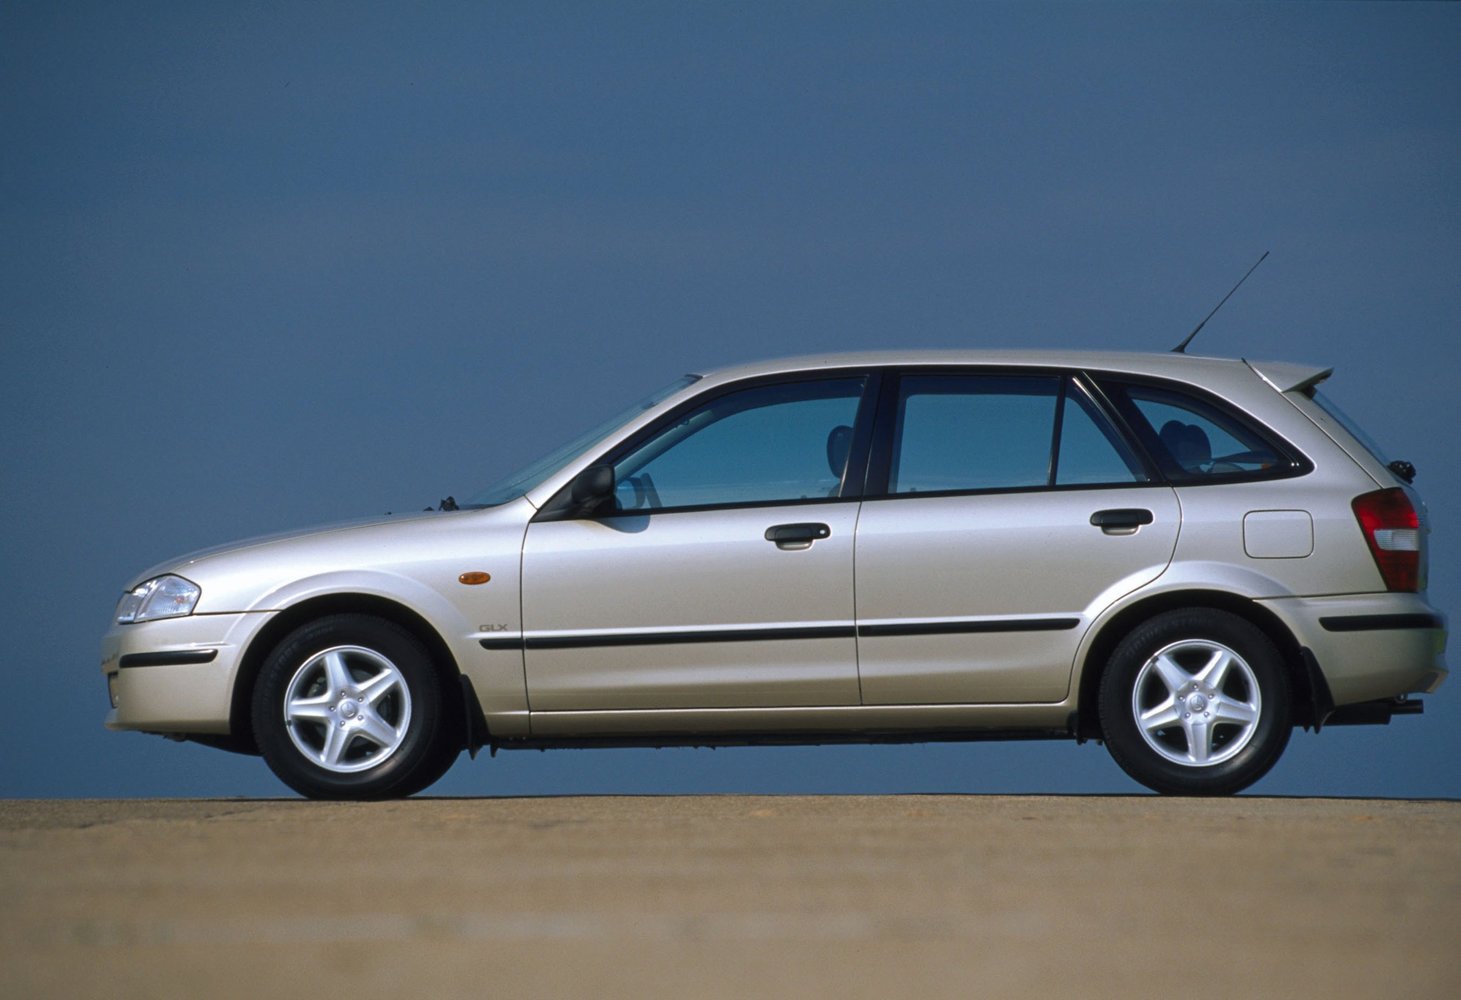 хэтчбек 5 дв. Mazda 323 2000 - 2003г выпуска модификация 1.3 MT (73 л.с.)